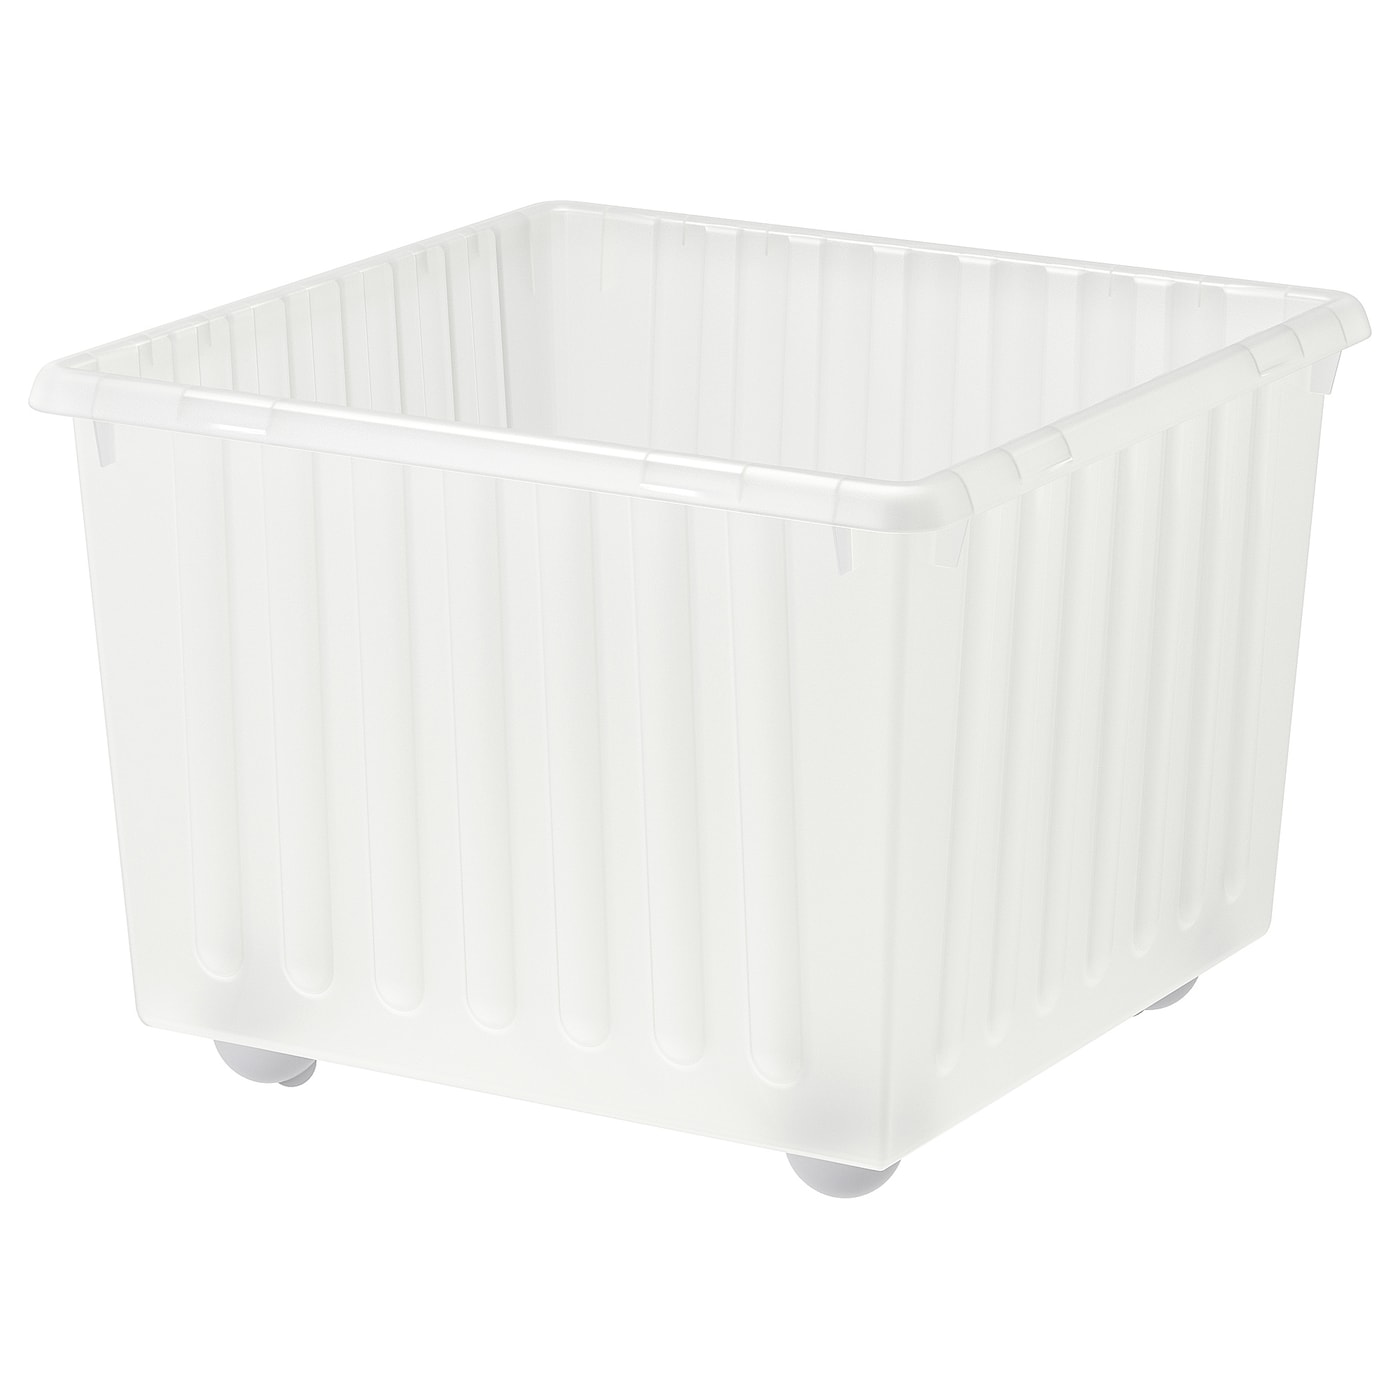 Ящик для хранения на колесиках - VESSLA IKEA/ ВЕССЛА ИКЕА, 39х39 см, белый